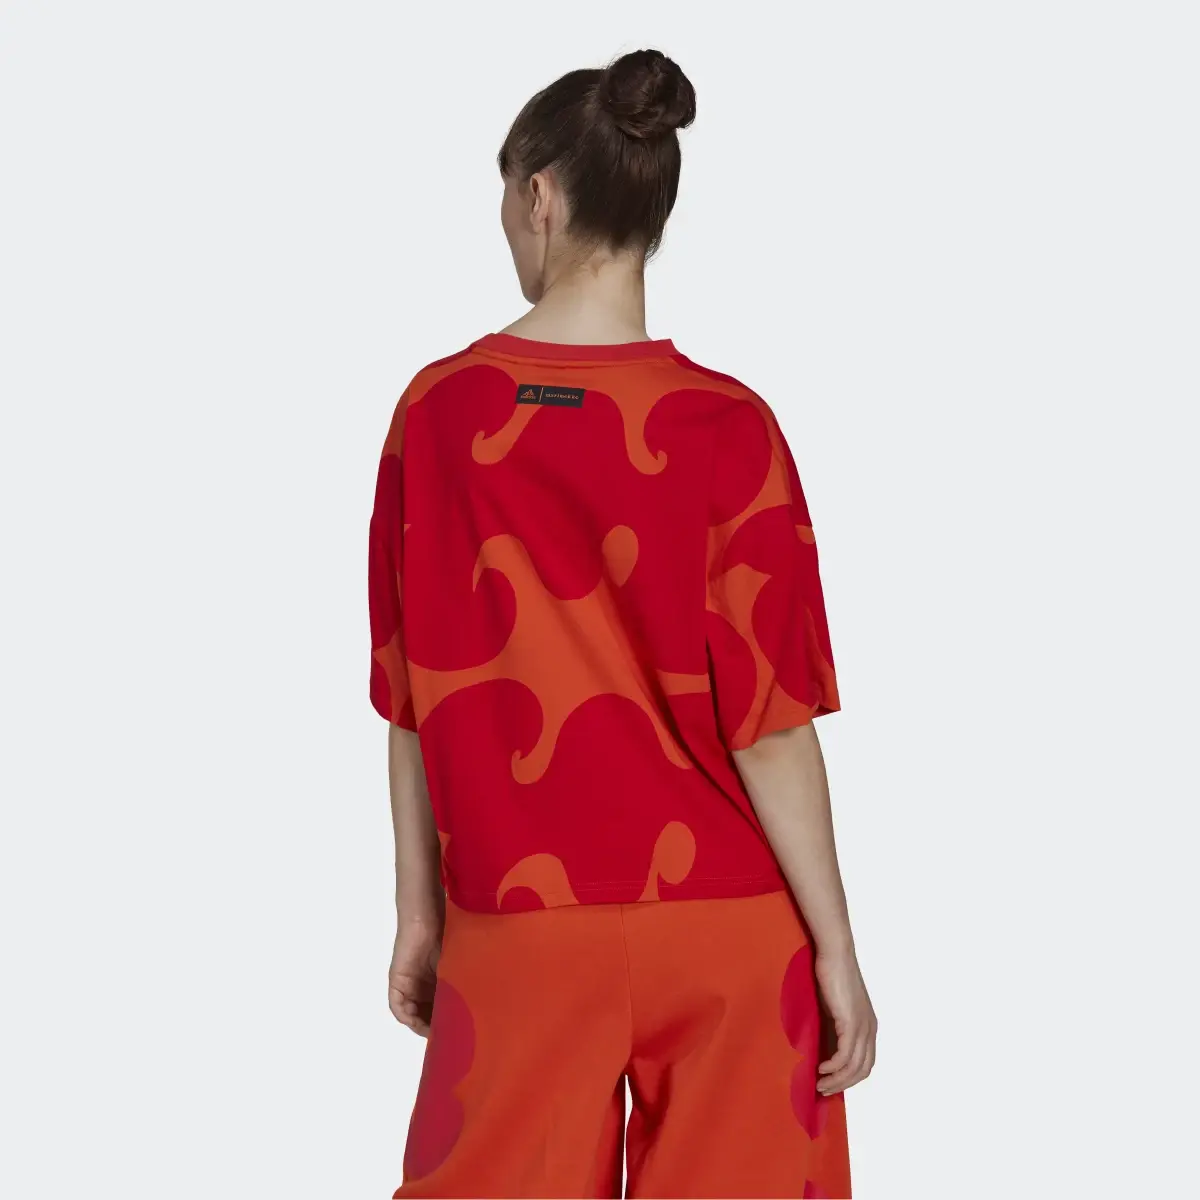 Adidas Marimekko T-Shirt. 3